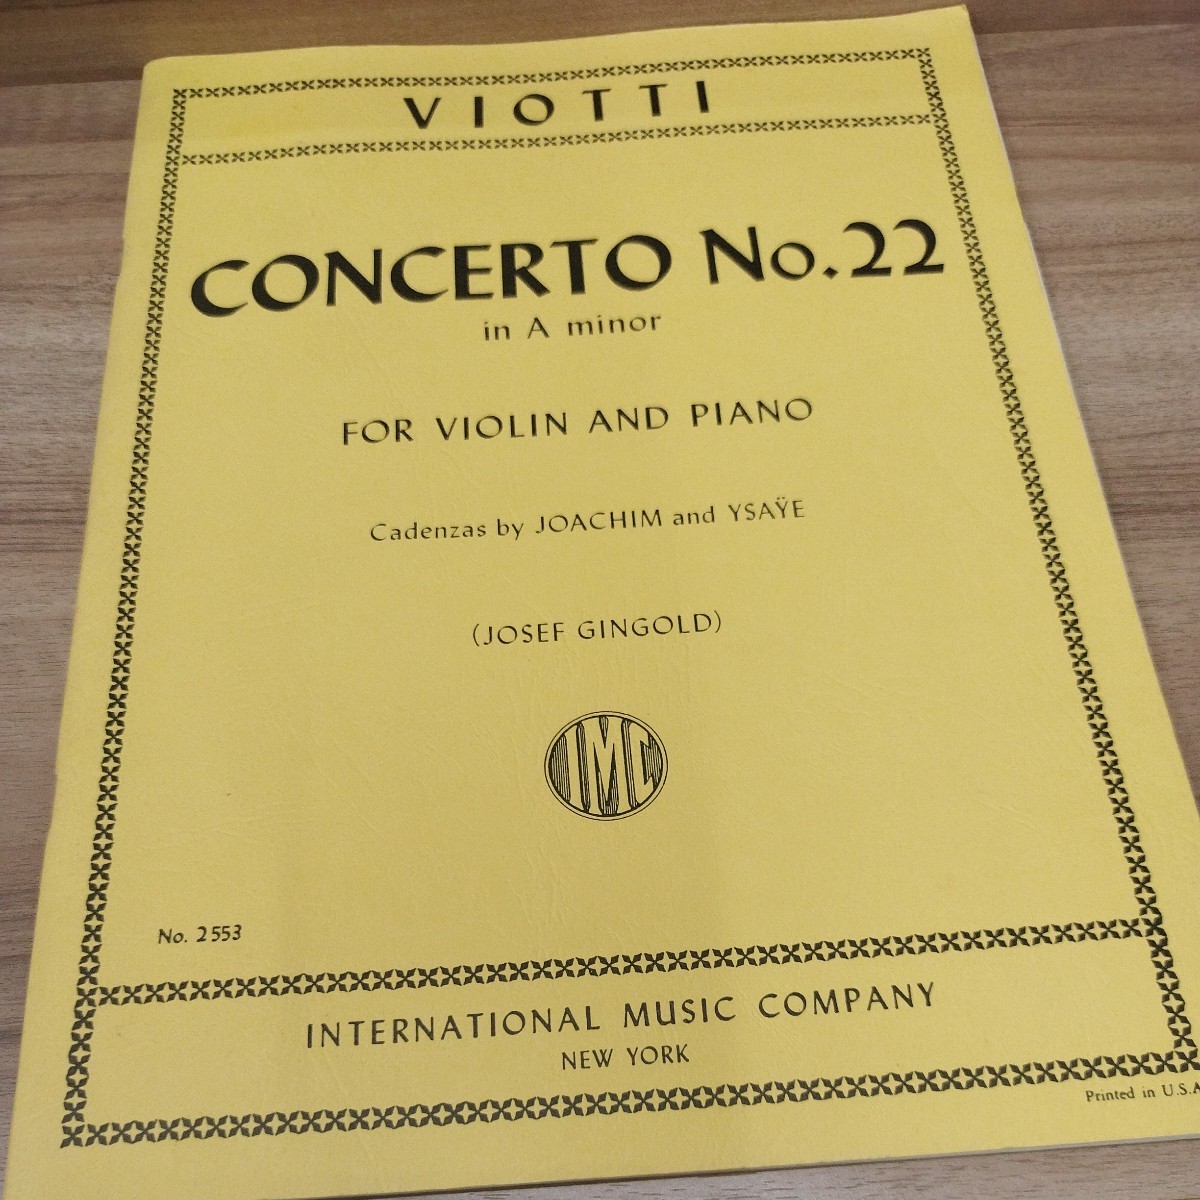 CONCERTO NO.22 in A minor FOR VIOLIN AND PIANO